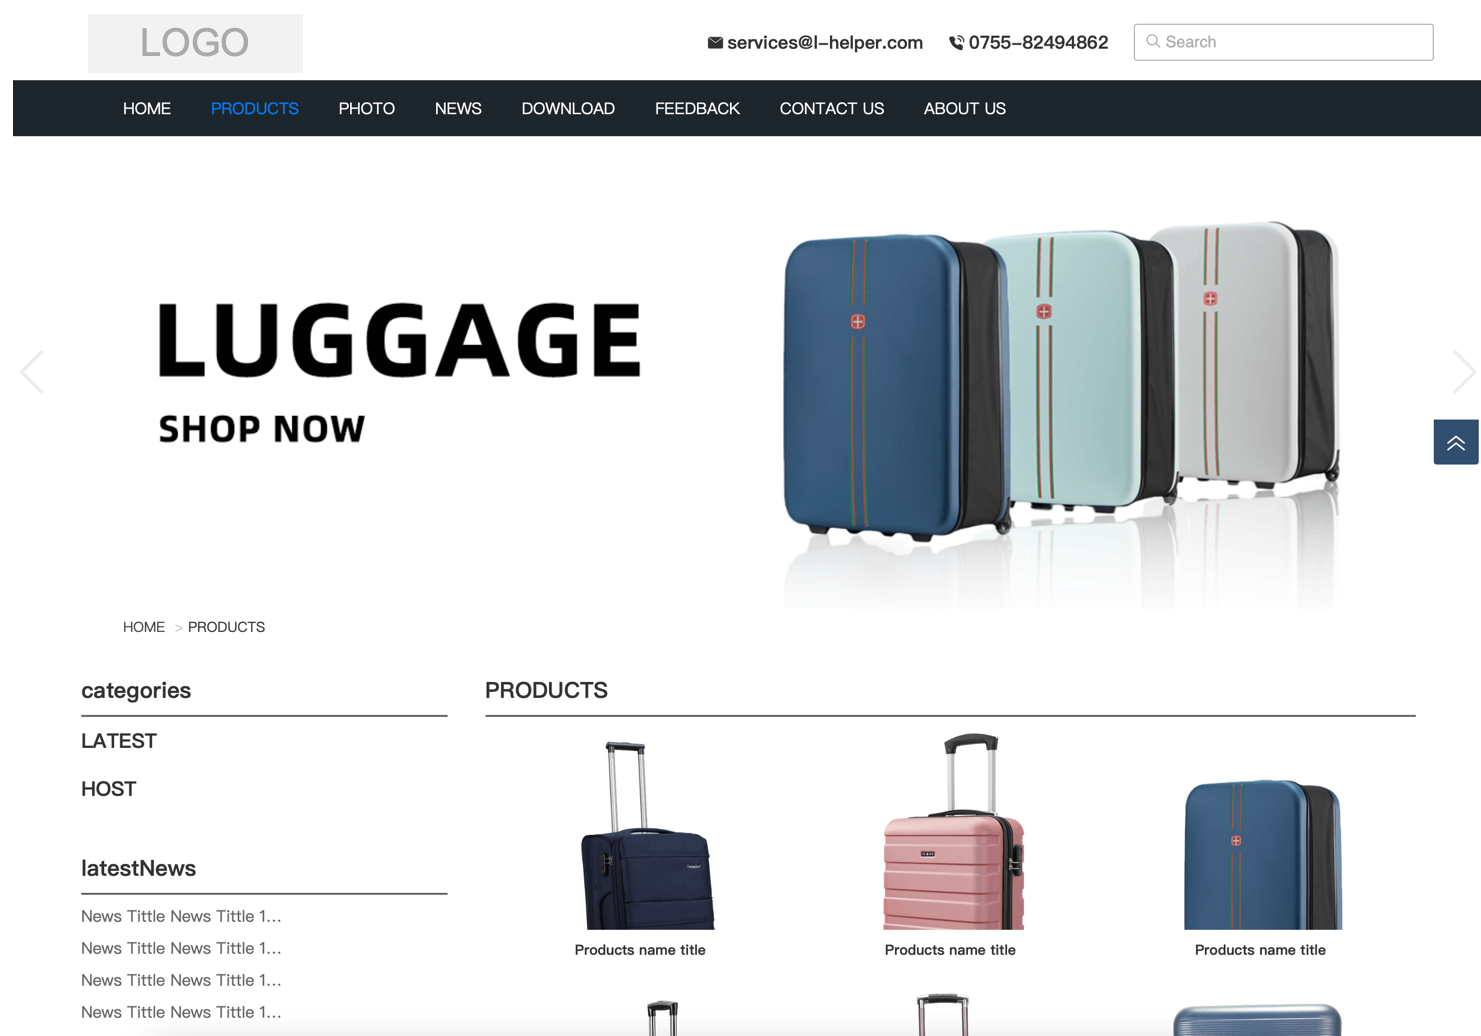 模板演示_SEO增强版_PK01 行李箱包、手提包、背包、挂包等